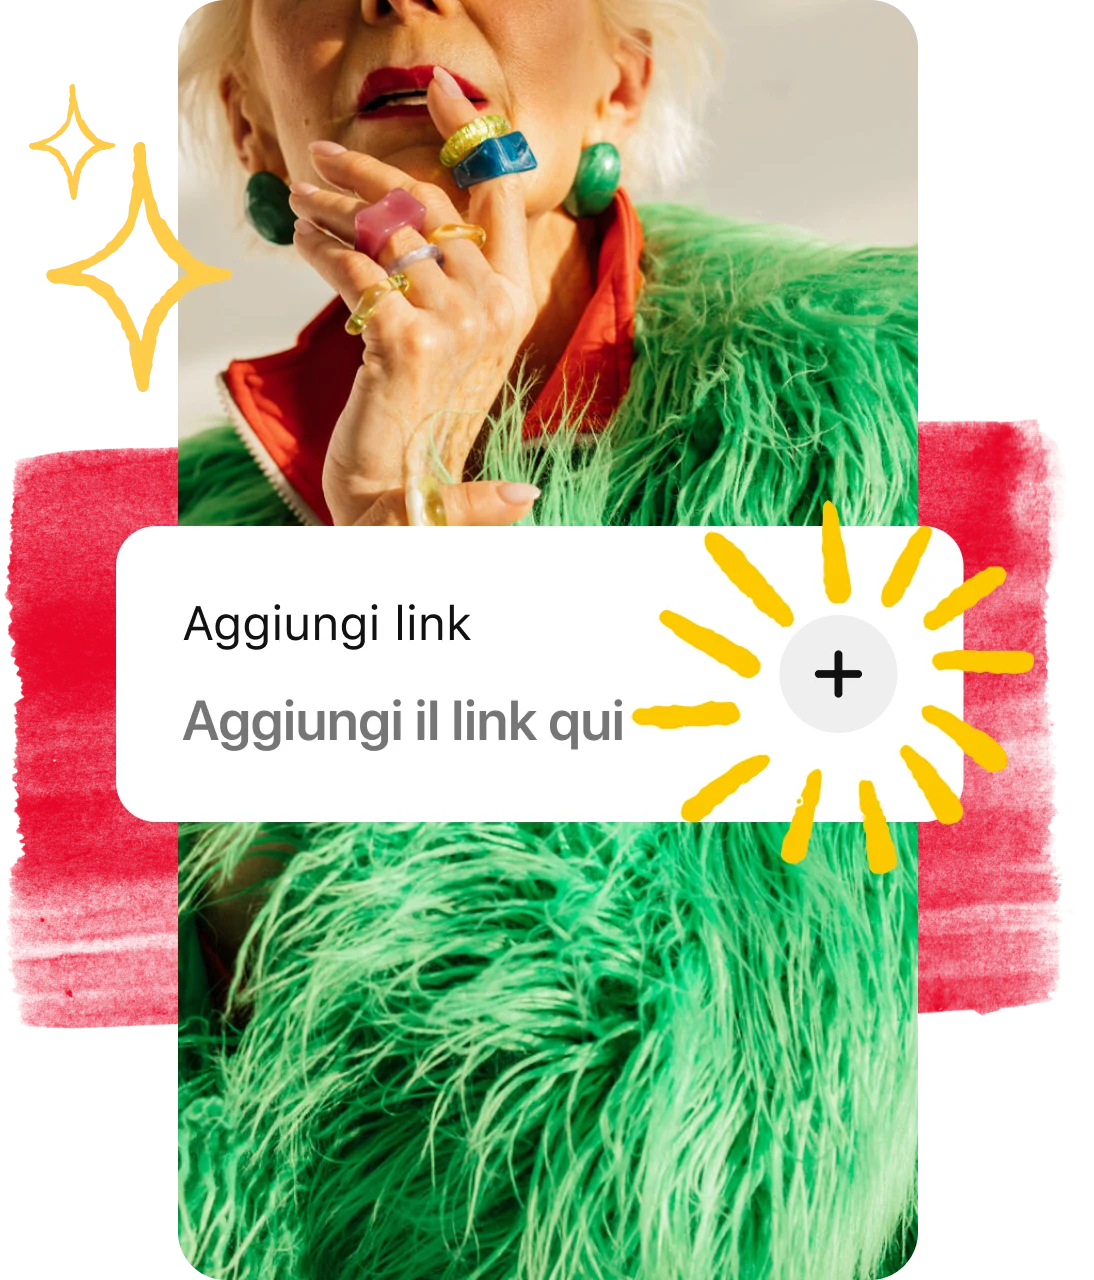 Pulsante Aggiungi link sovrapposto al Pin di una donna con una pelliccia verde